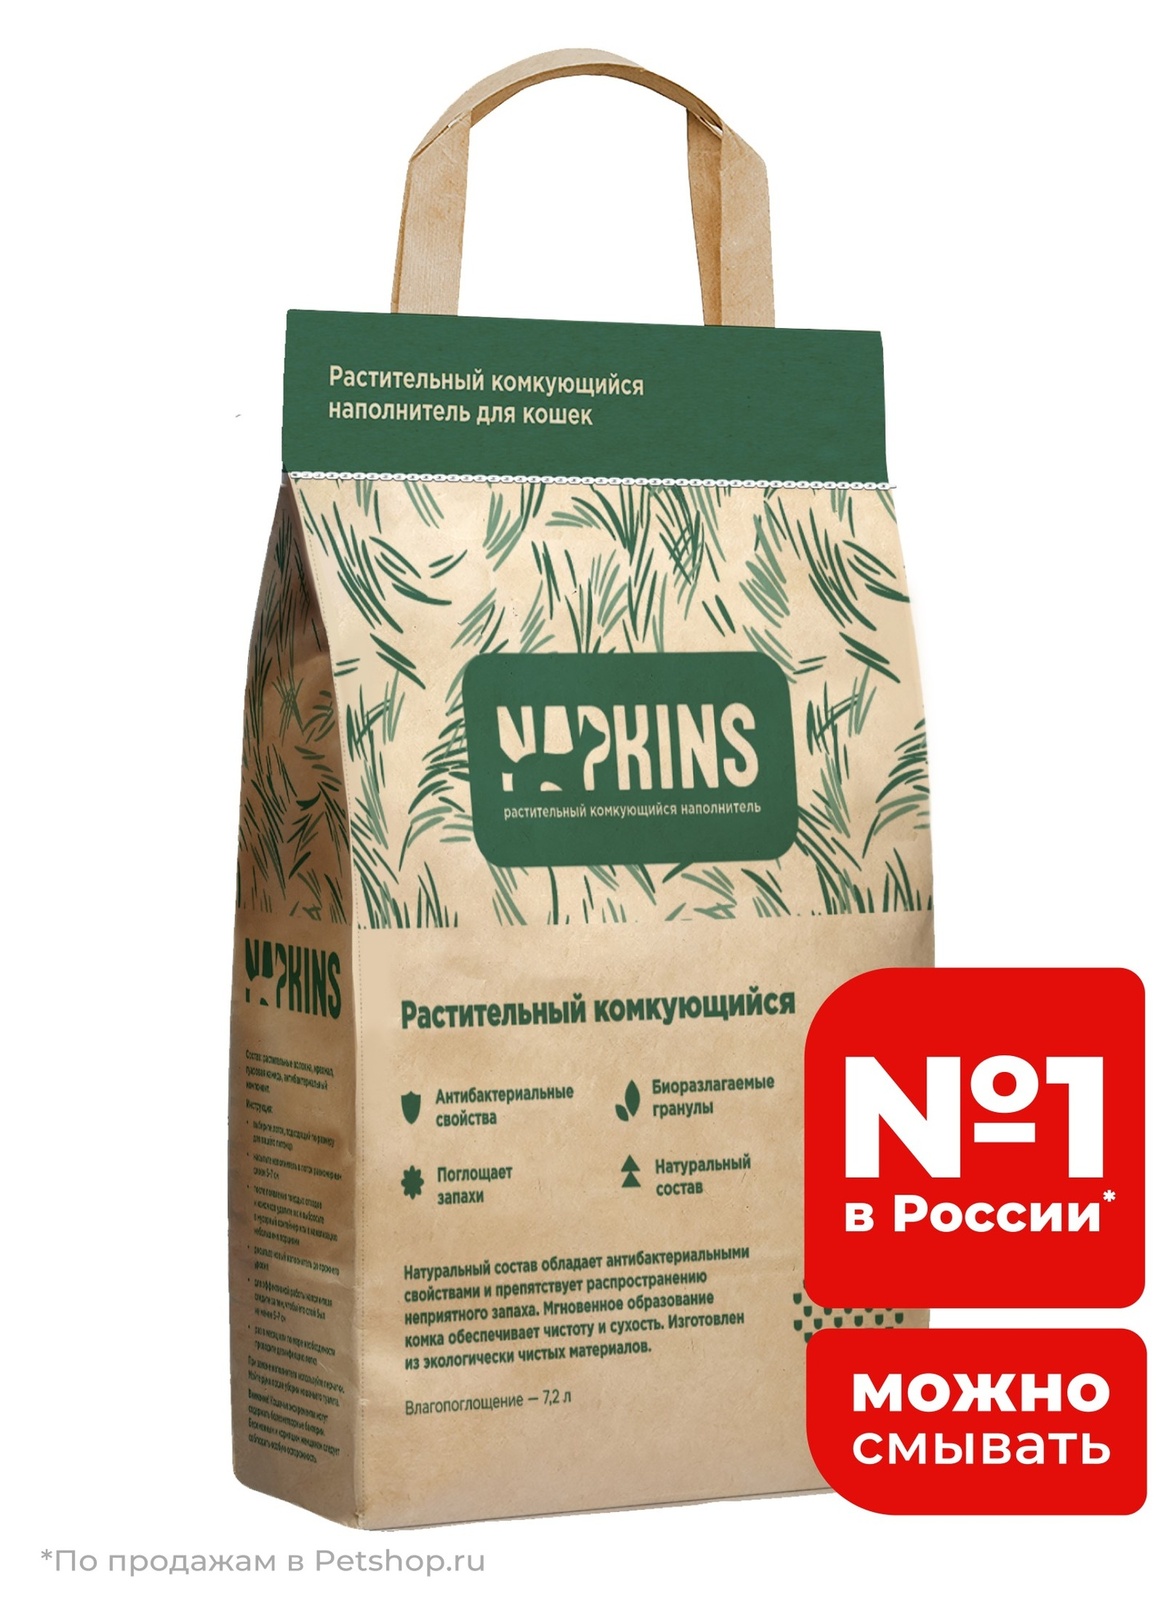 NAPKINS наполнитель NAPKINS наполнитель растительный комкующийся наполнитель (3 кг) napkins наполнитель napkins наполнитель древесный наполнитель 12 кг